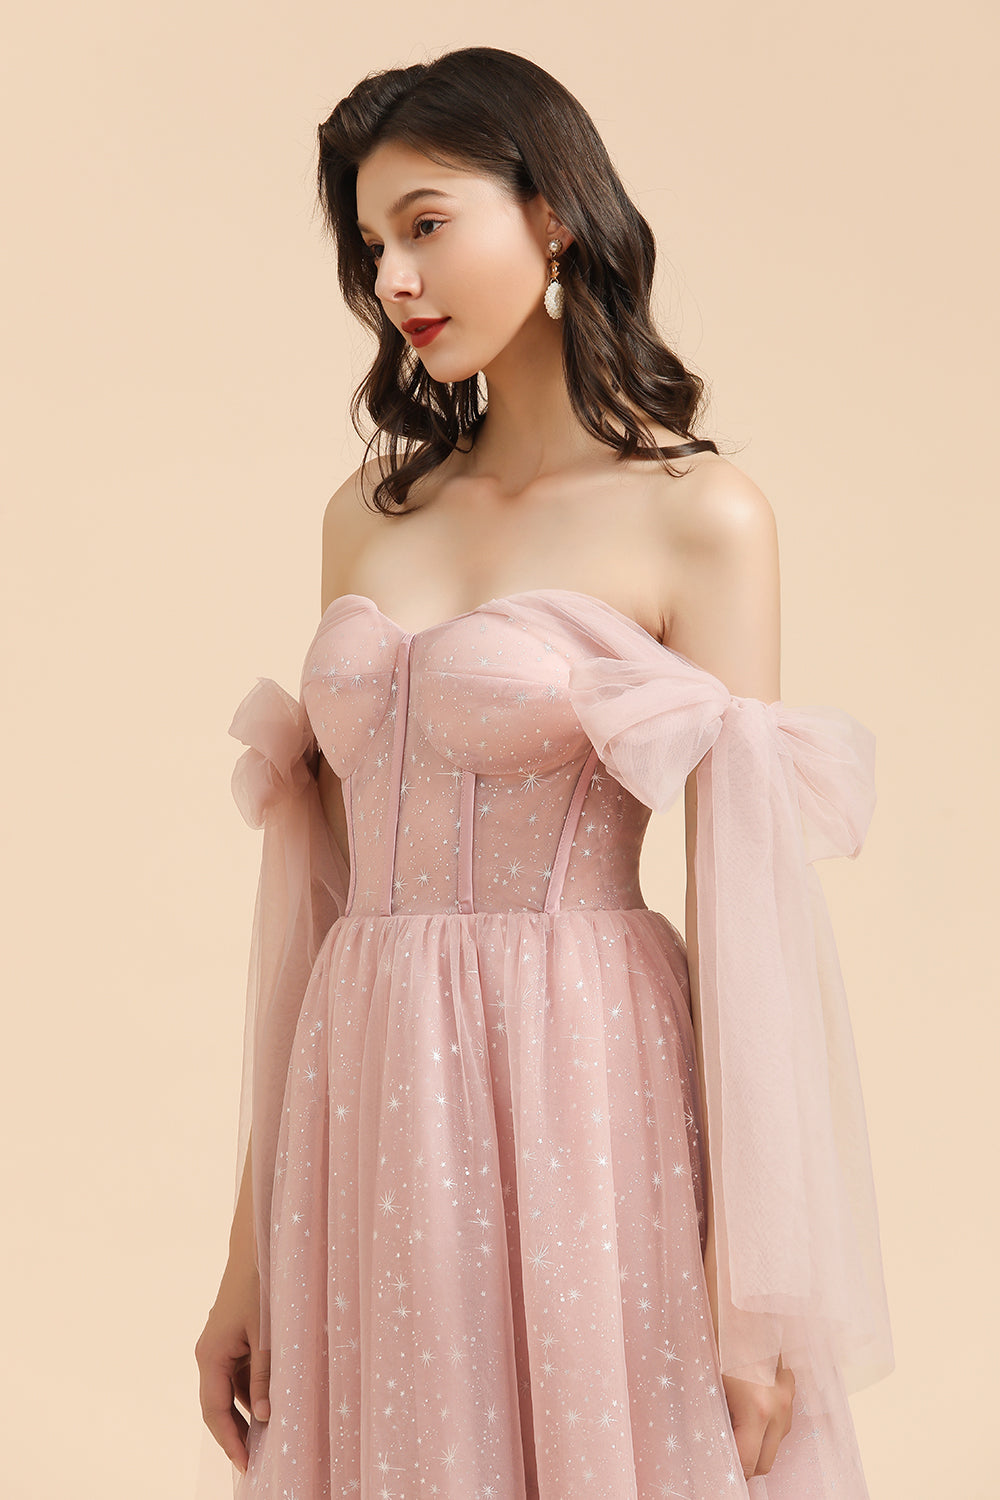 V-neck Tulle Long Evening Pink Prom Dress Online